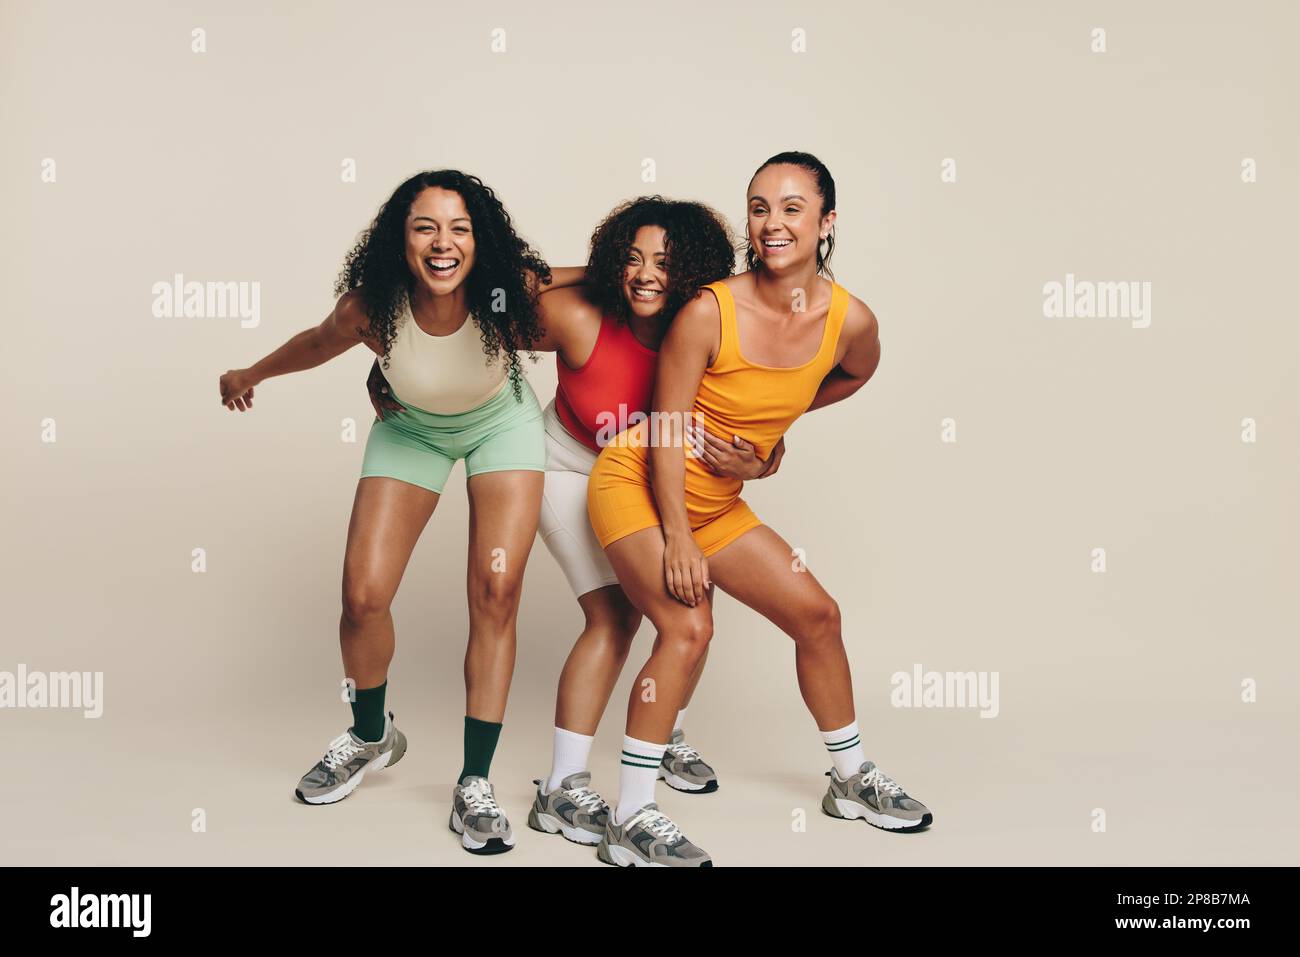 Gruppo di giovani atleti che ridono e si divertono nell'abbigliamento fitness, celebrando il loro amore per lo sport e l'esercizio fisico. Felice giovane sportswomen dem Foto Stock